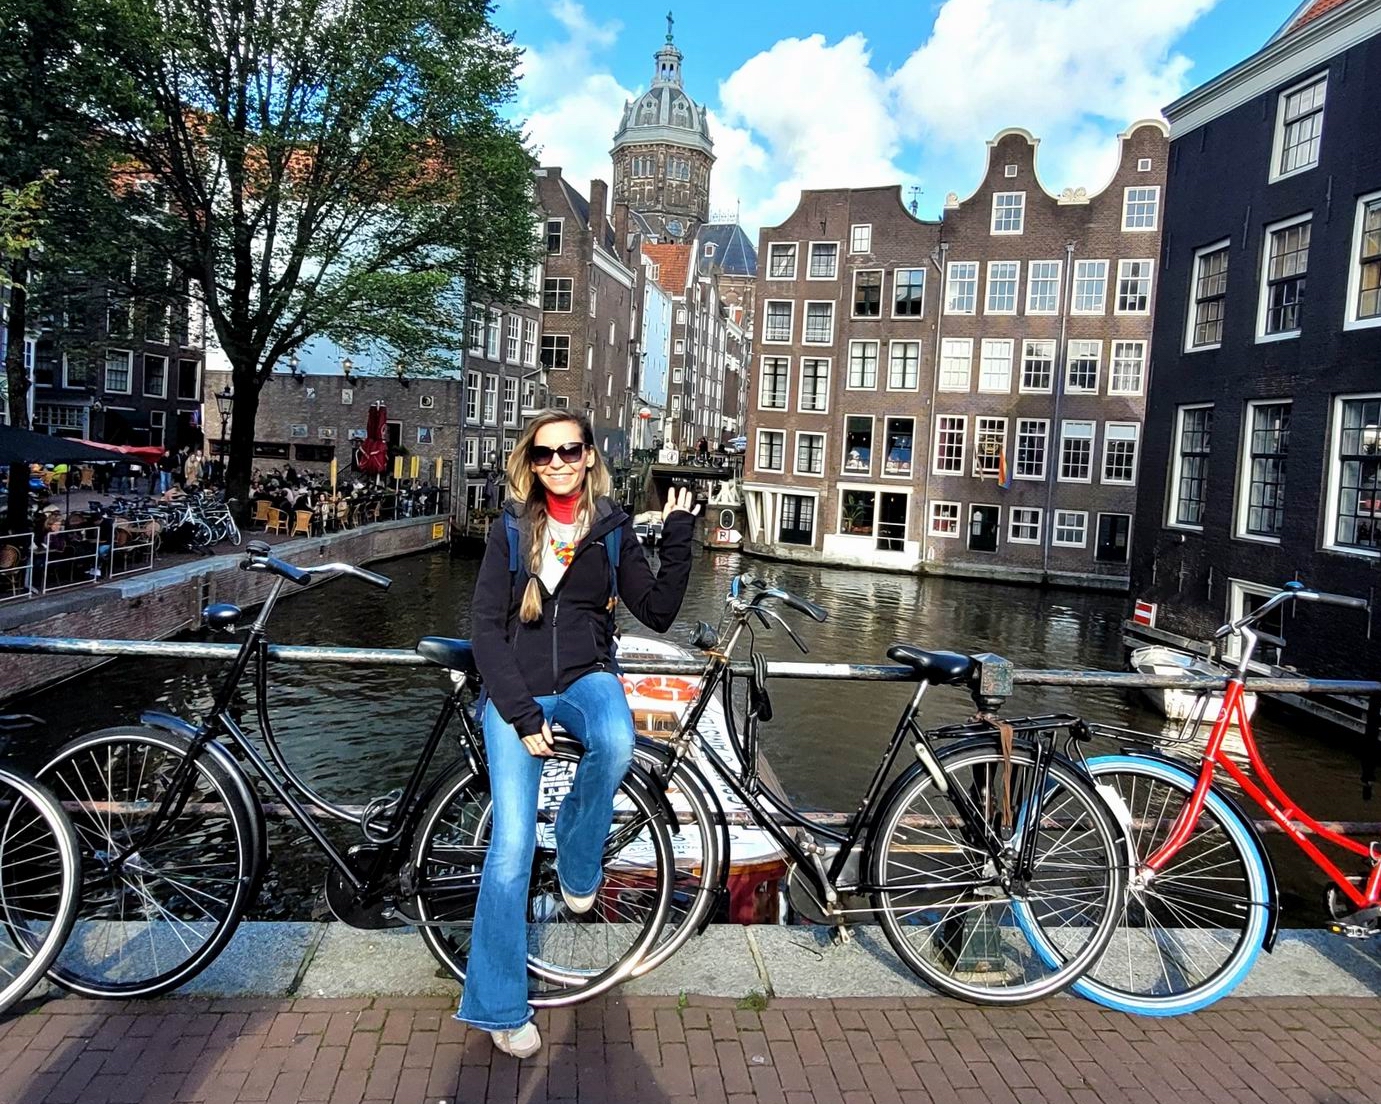 Vin în Amsterdam! Ce trebuie să știu? 25 de lucruri de știut și de făcut dacă vii în vizită în Amsterdam